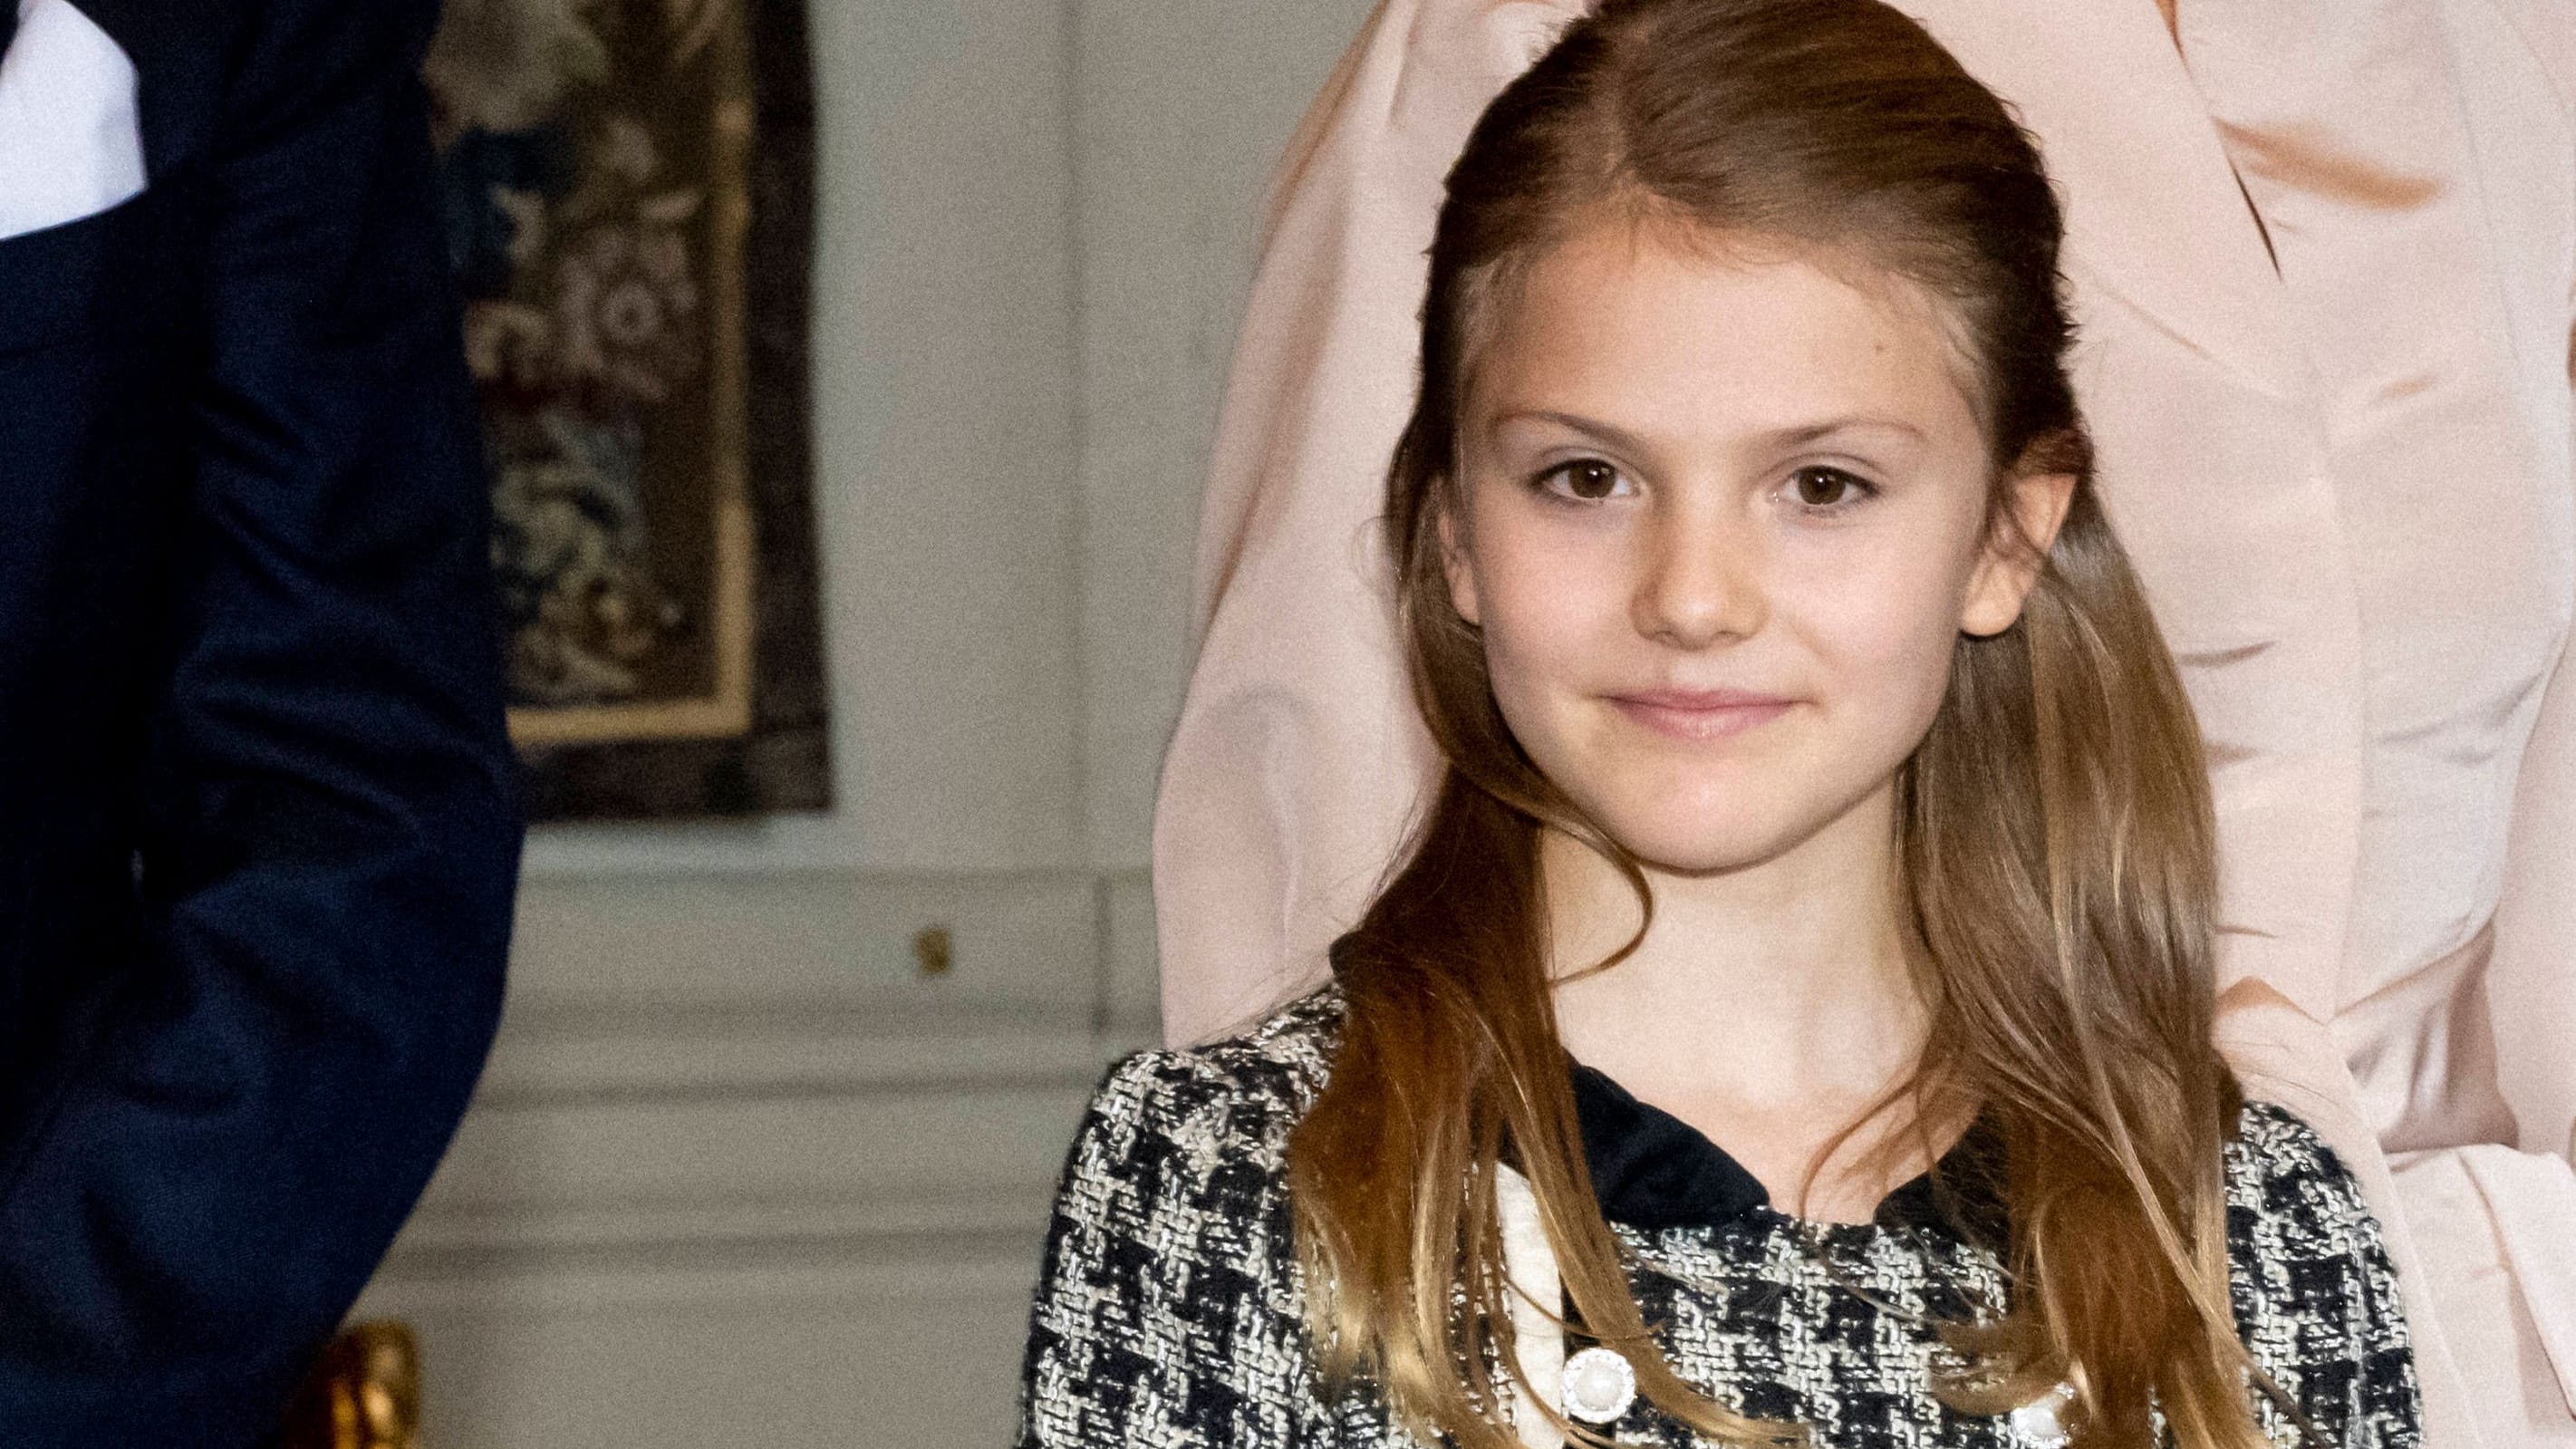 Prinzessin Estelle hat Geburtstag: Palast teilt private Aufnahmen